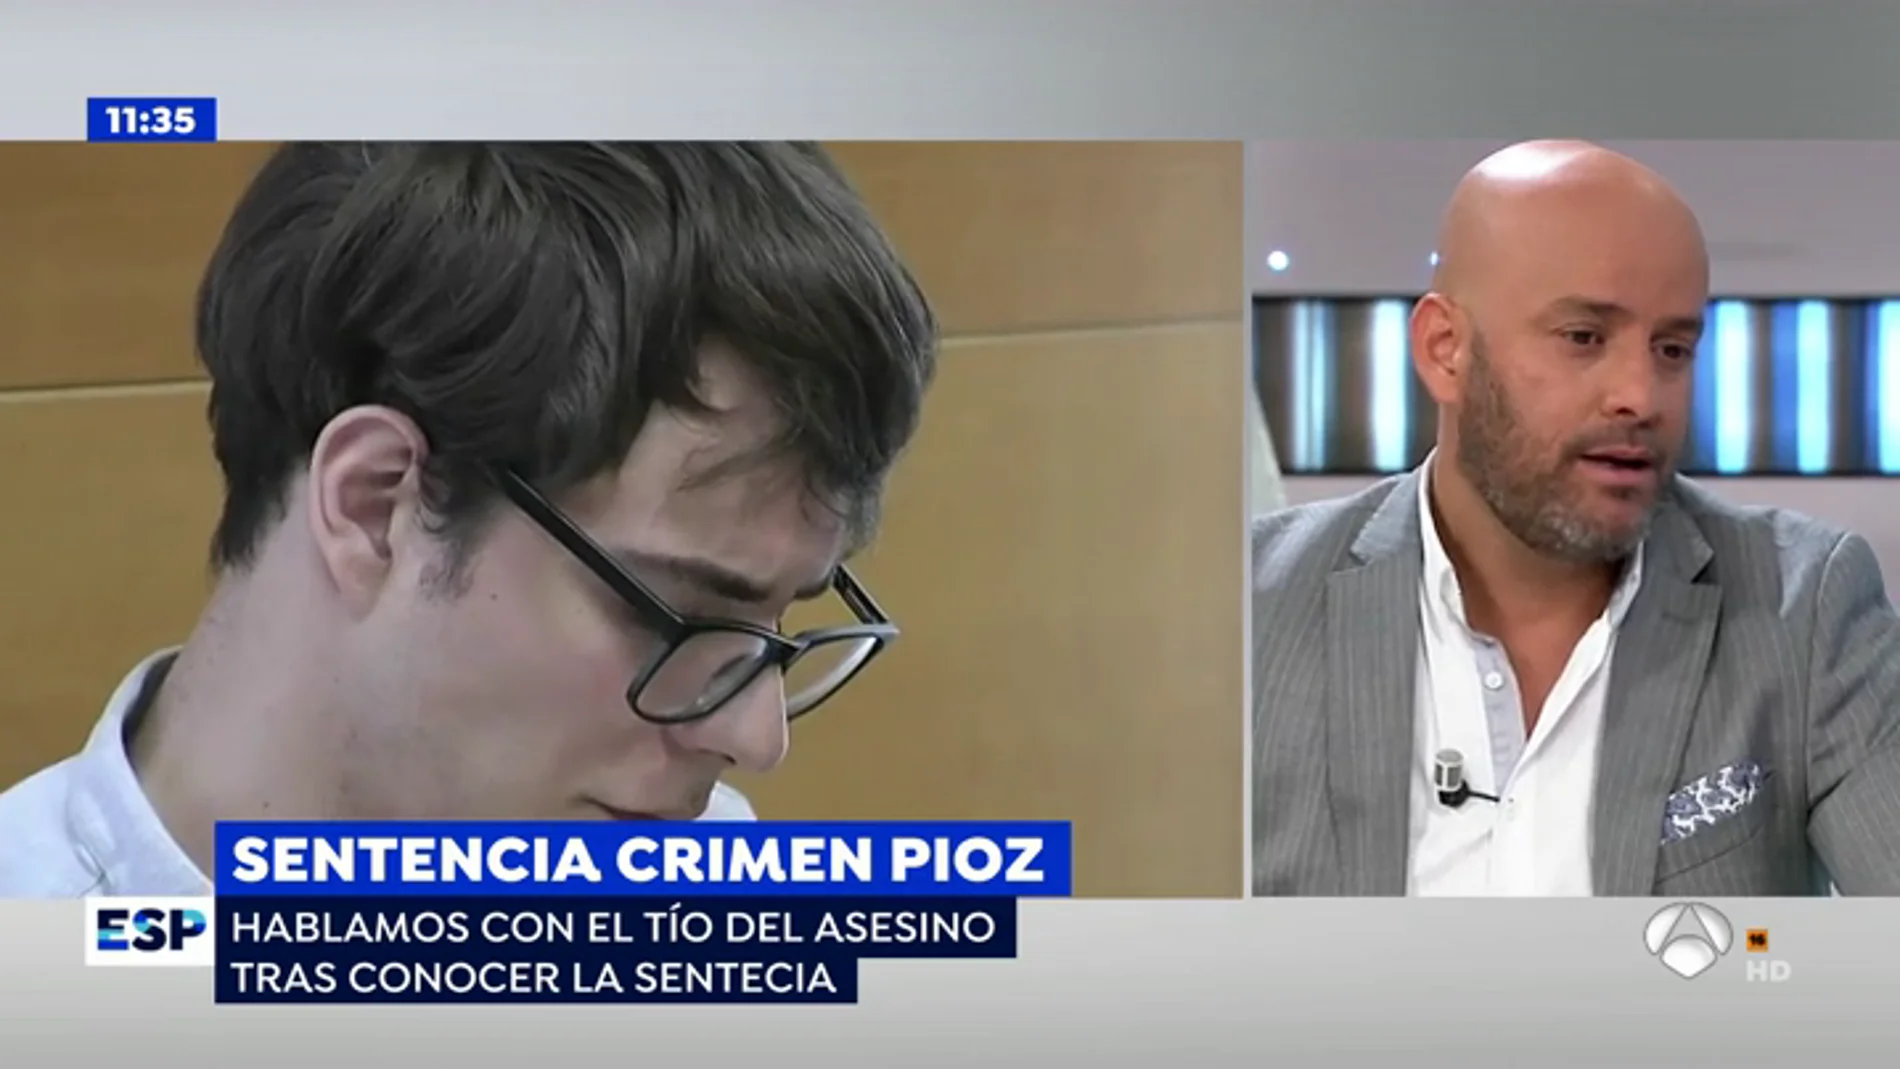 Walfran, tío del asesino de Pioz, satisfecho con la condena: "La justicia brasileña sigue el ejemplo de España"